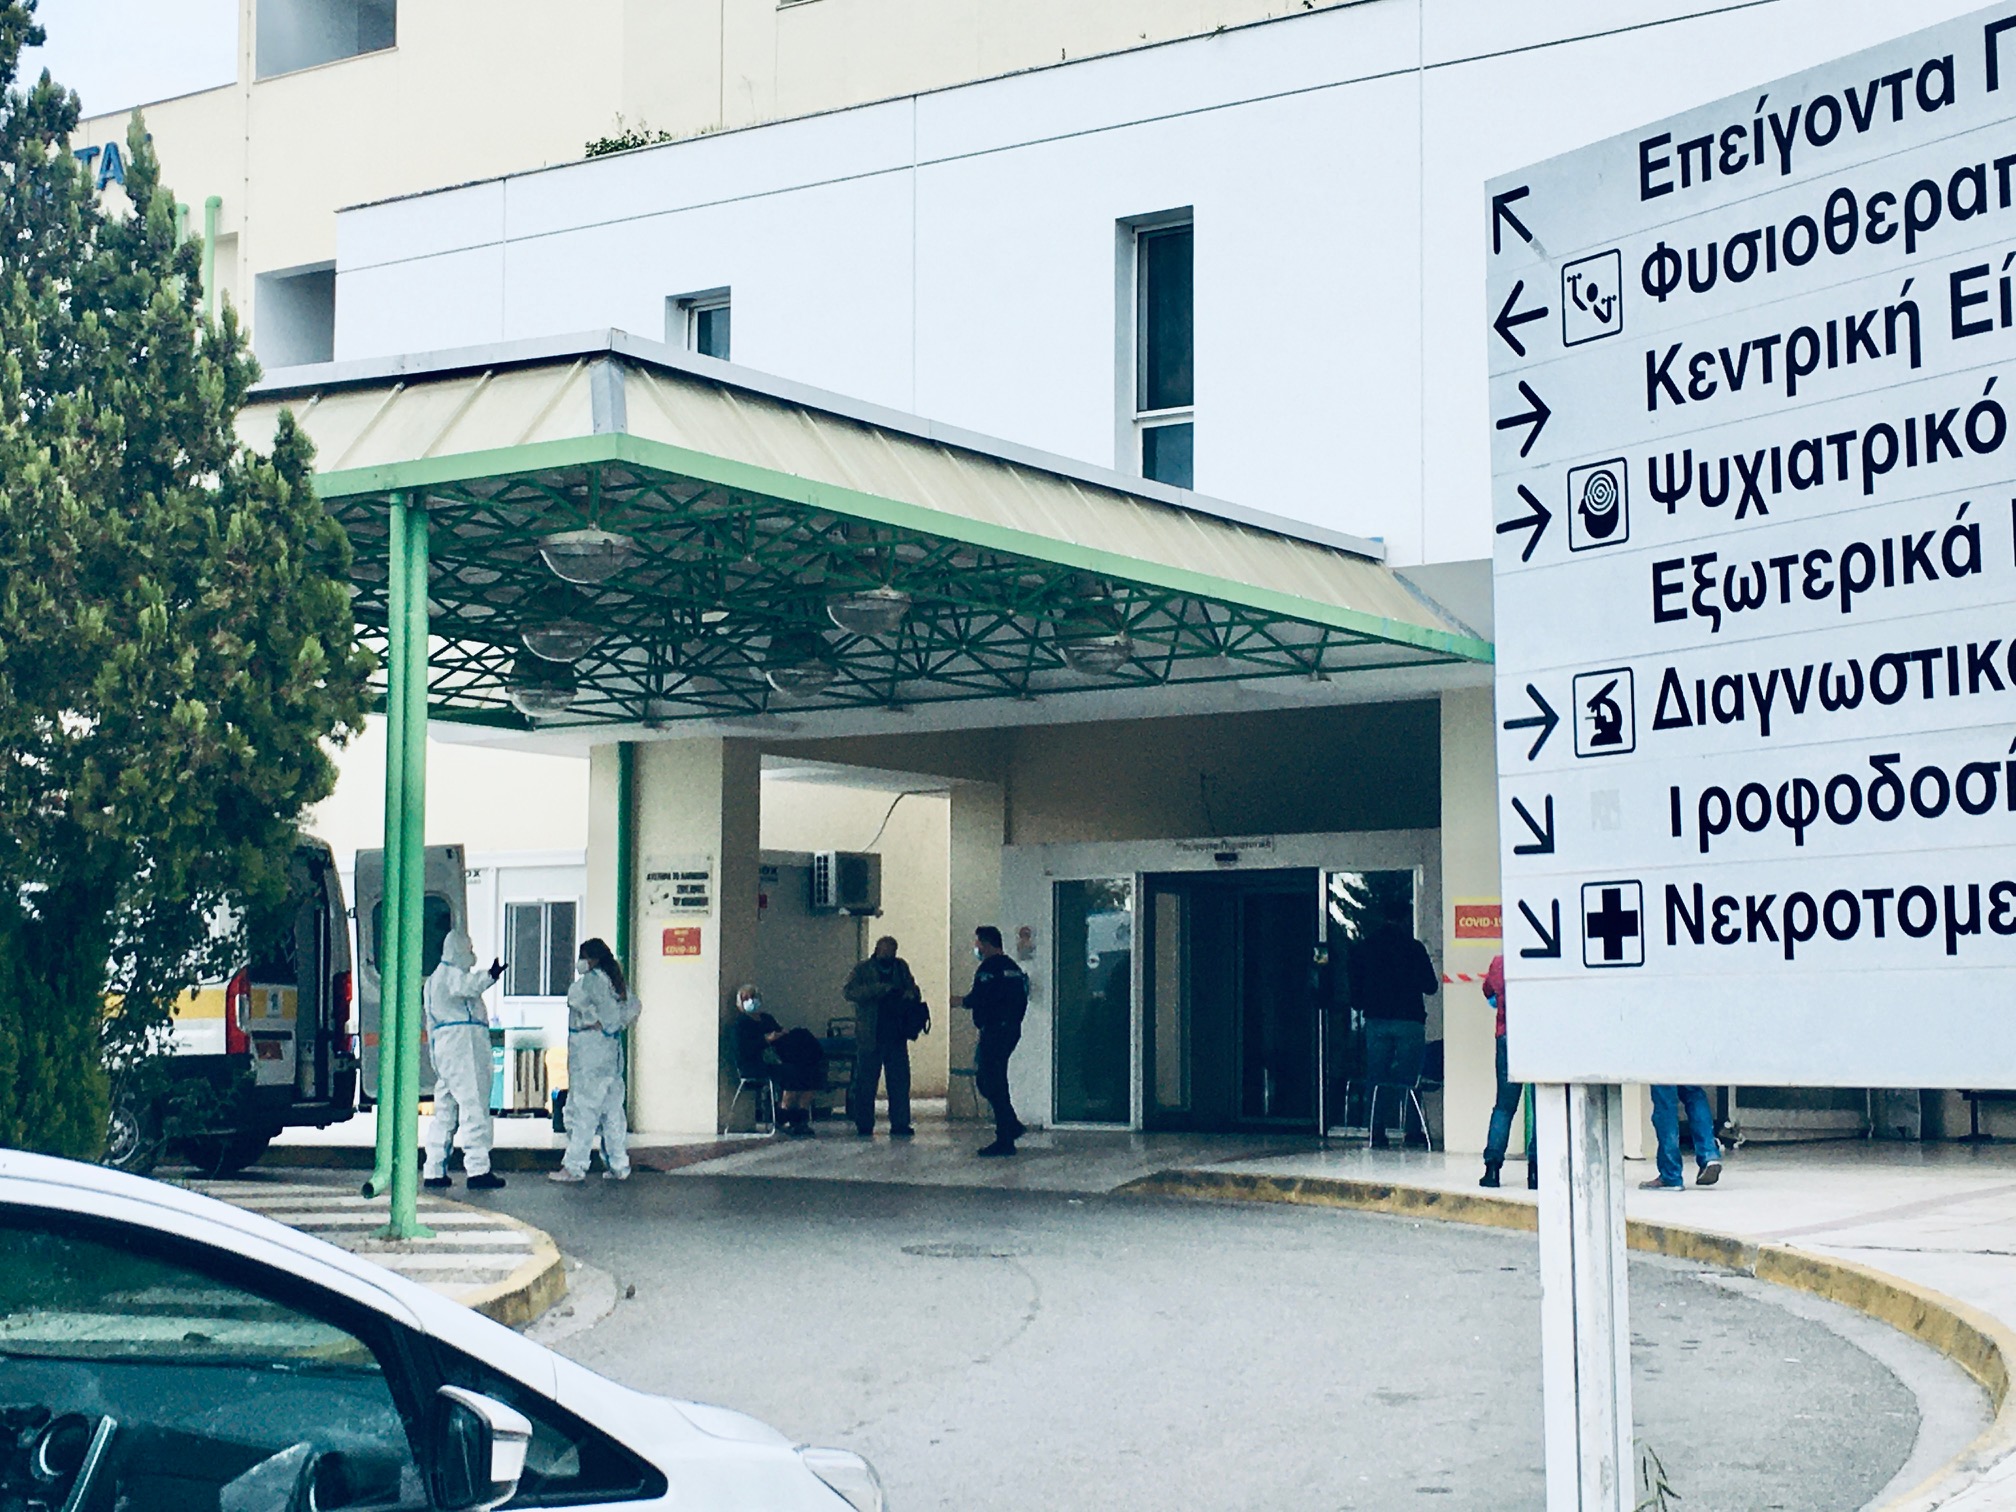 Καλαμάτα: 36 ασθενείς νοσηλεύονται στην κλινική Covid-19 – Τέλος τα επισκεπτήρια στο Νοσοκομείο